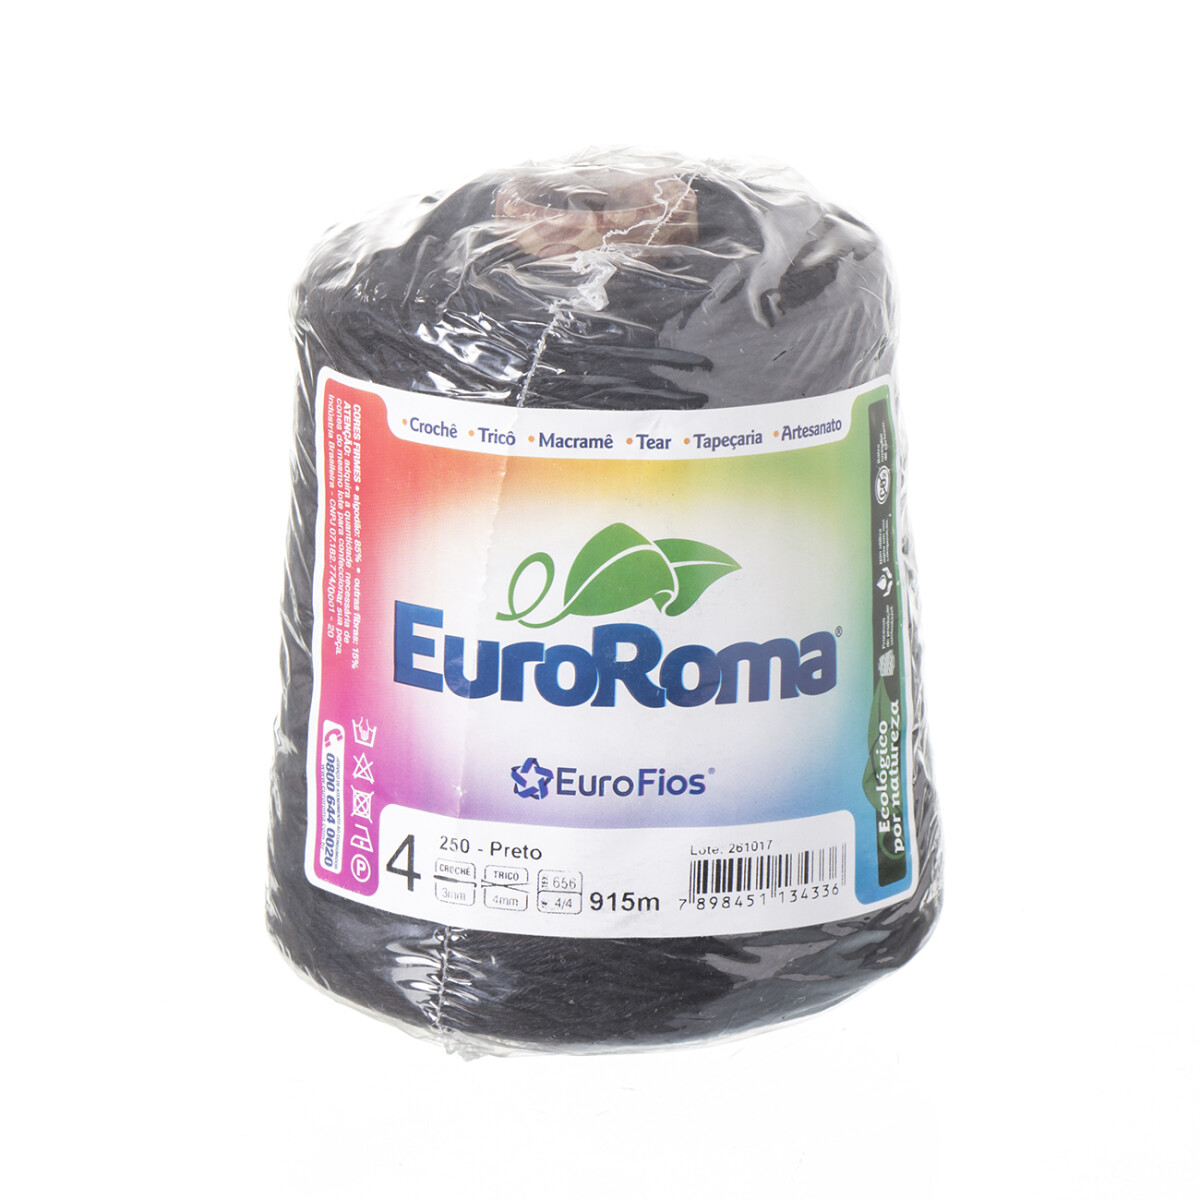 Euroroma algodón Colorido manualidades - preto 